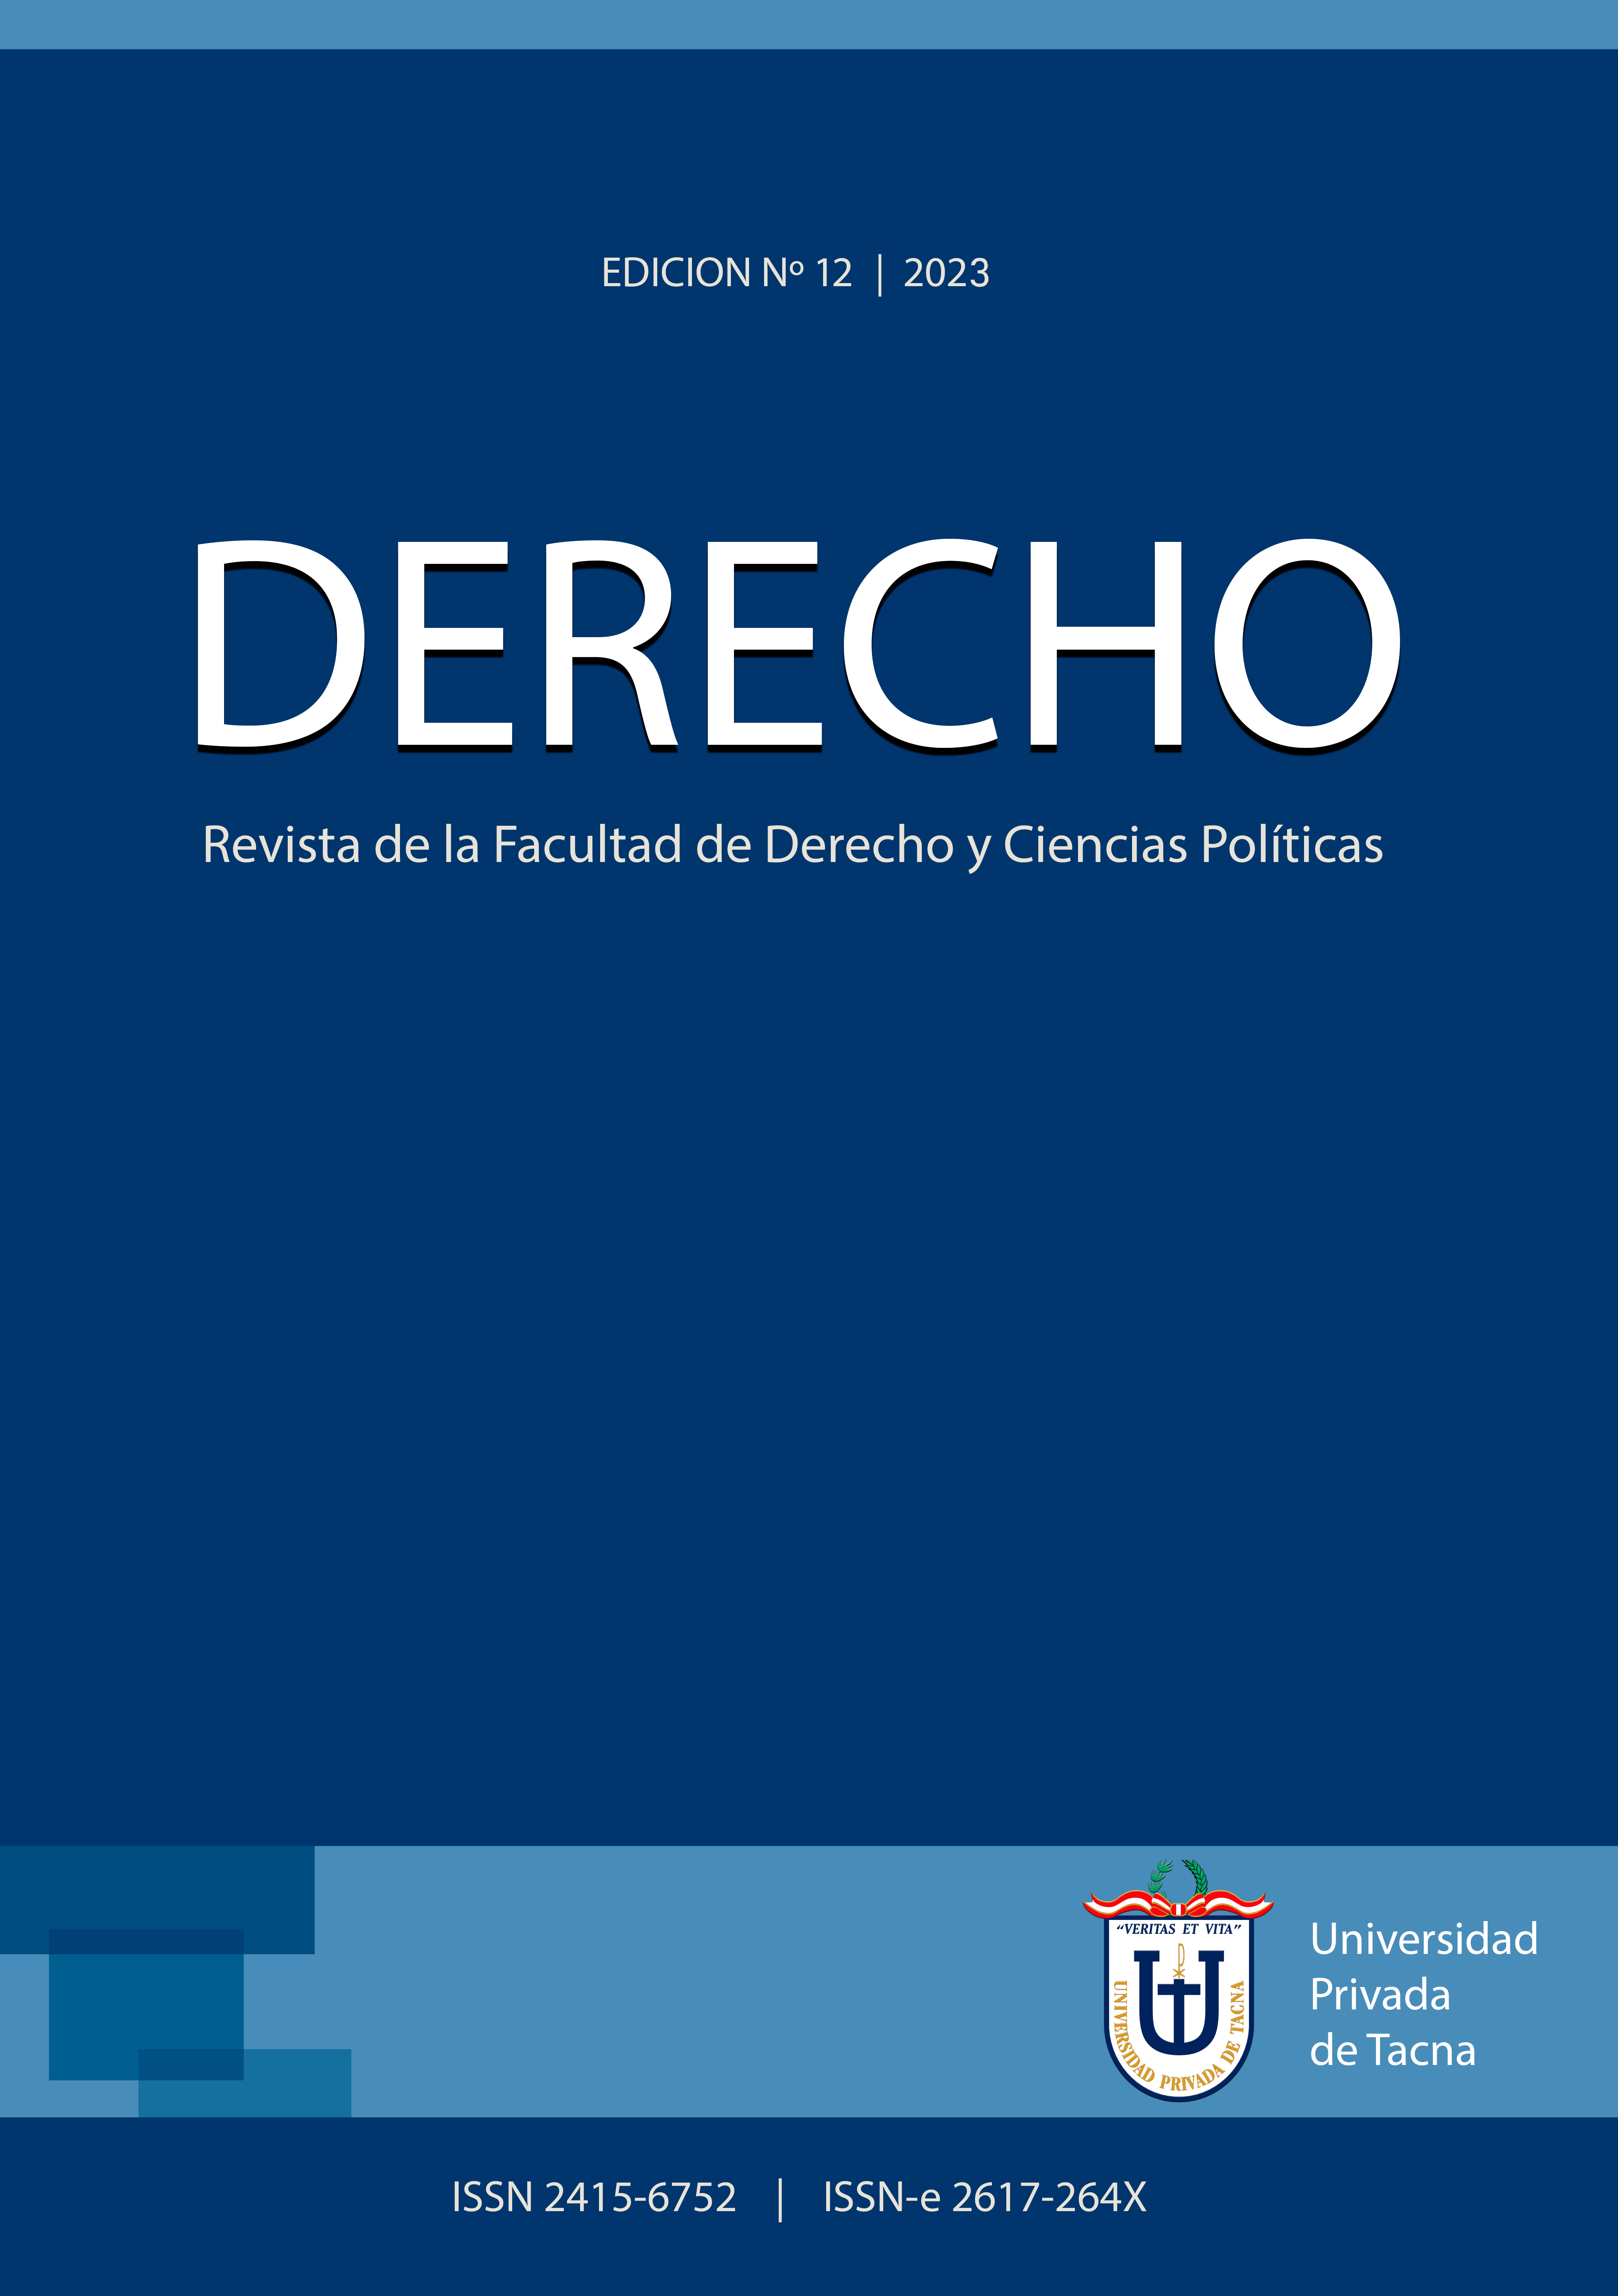 					Ver Vol. 12 Núm. 12 (2023): DERECHO: Revista de la Facultad de Derecho y Ciencias Políticas
				